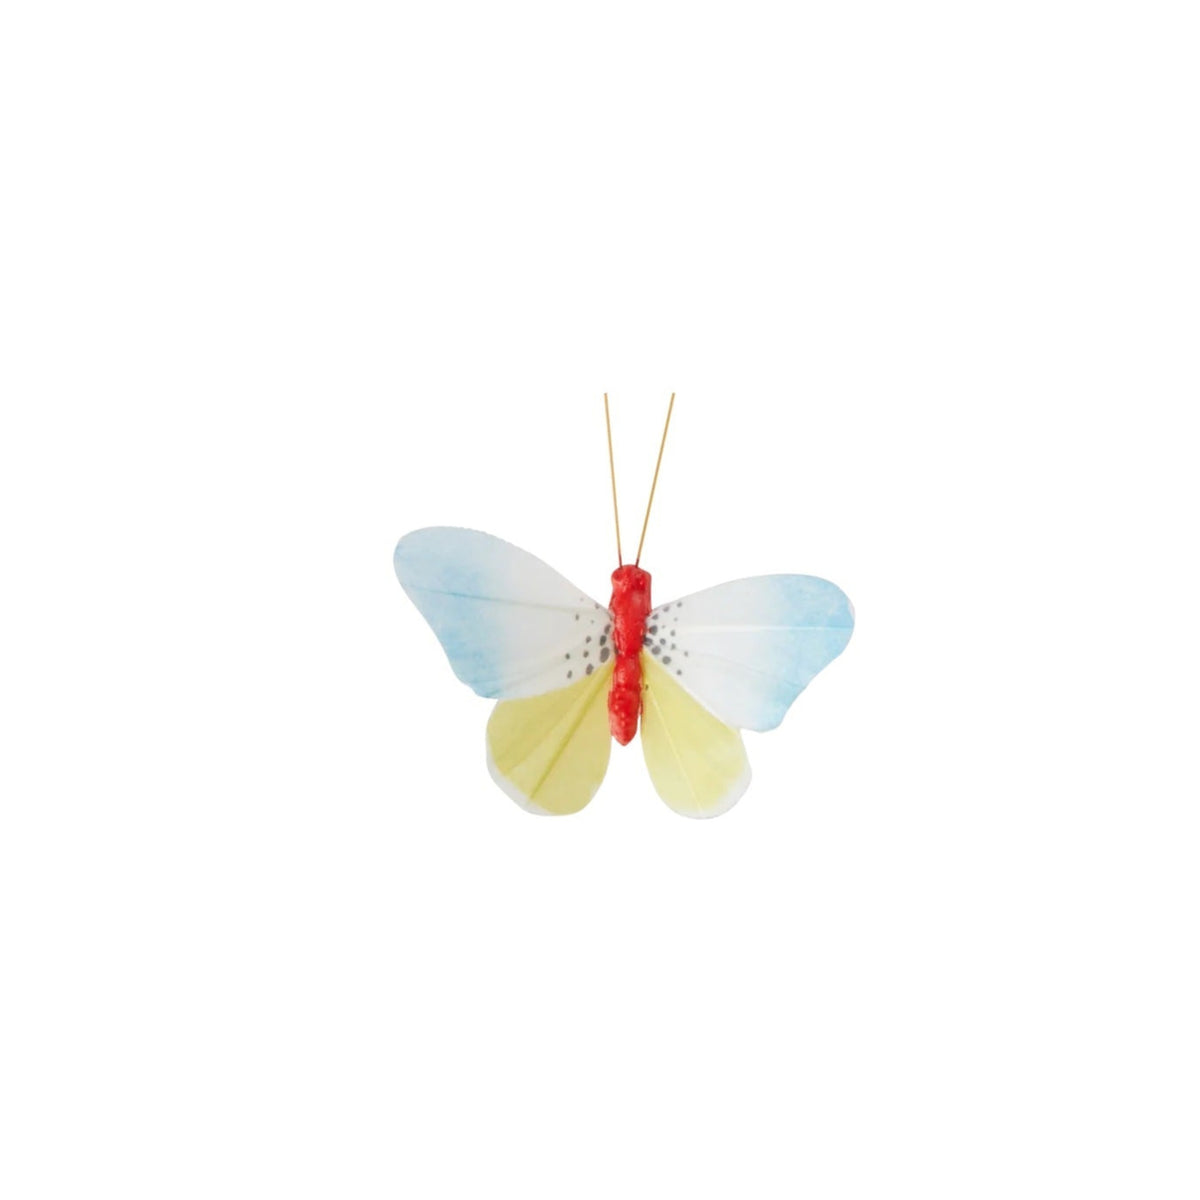 Deko-sommerfugl med gul/lyseblå· Sommerfugl på klip fra Rice · Niedziella & Friends (8354743615833) (8354753872217)